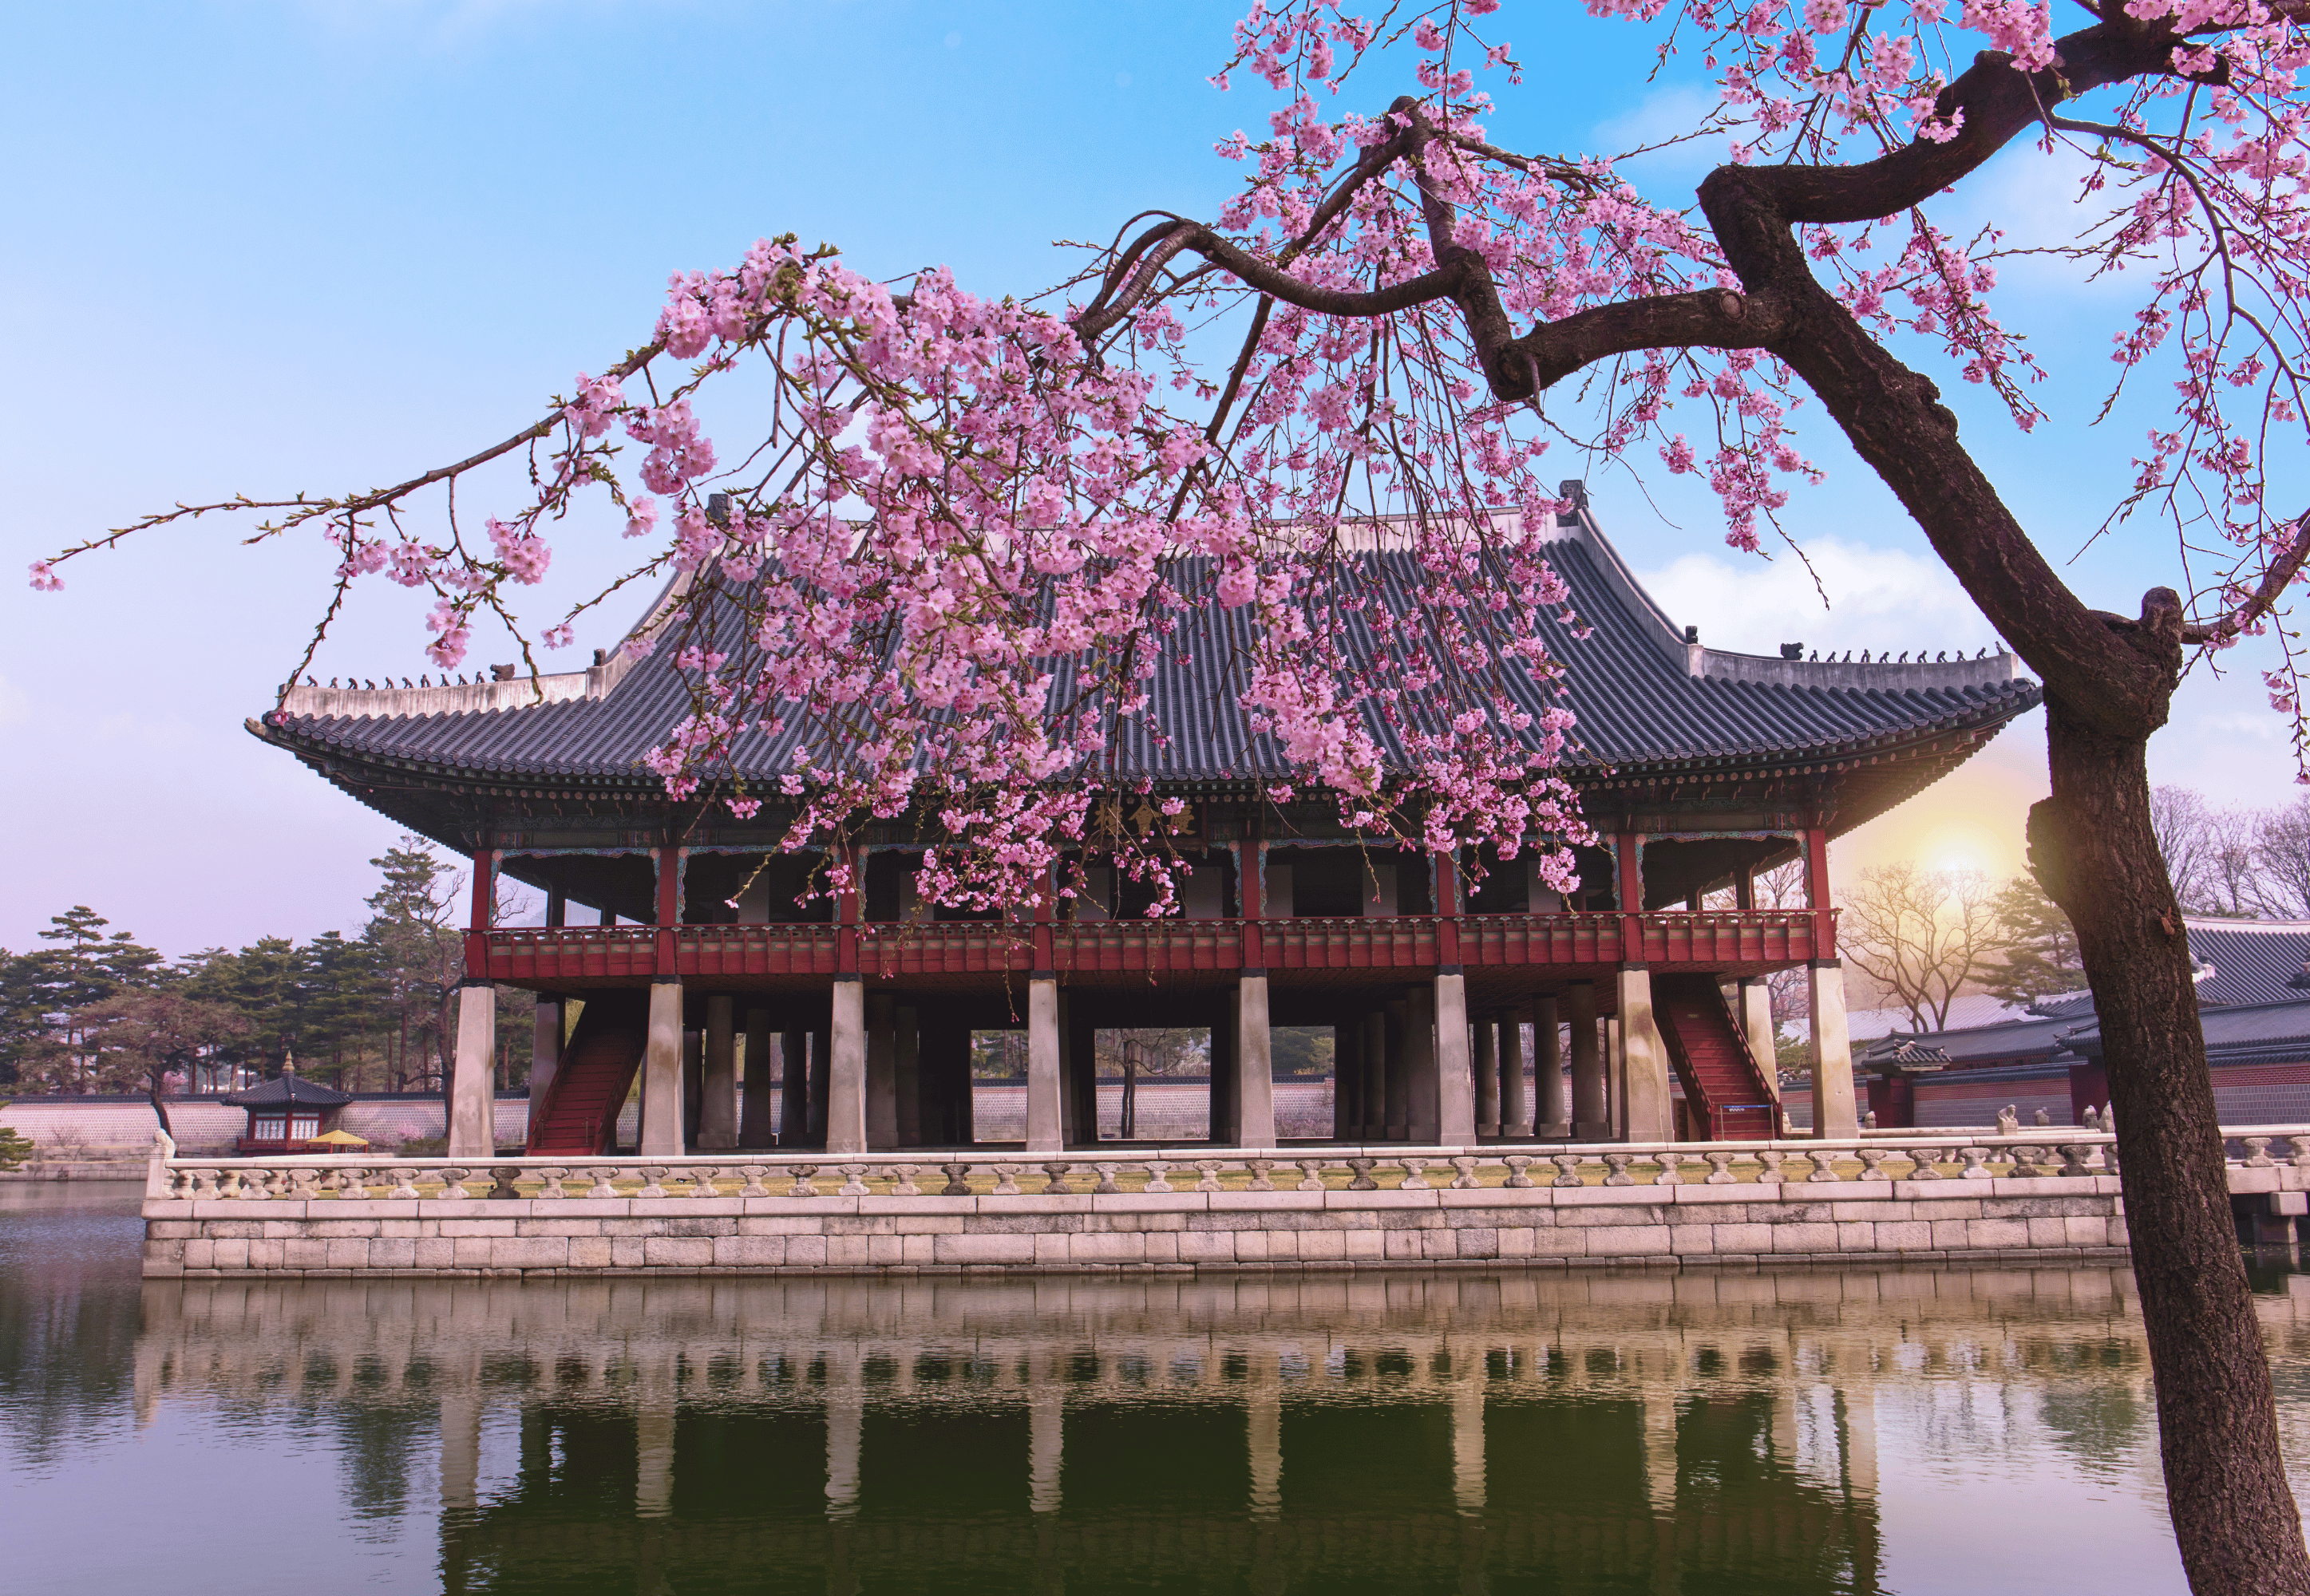 Khám phá cung điện nổi tiếng Hàn Quốc